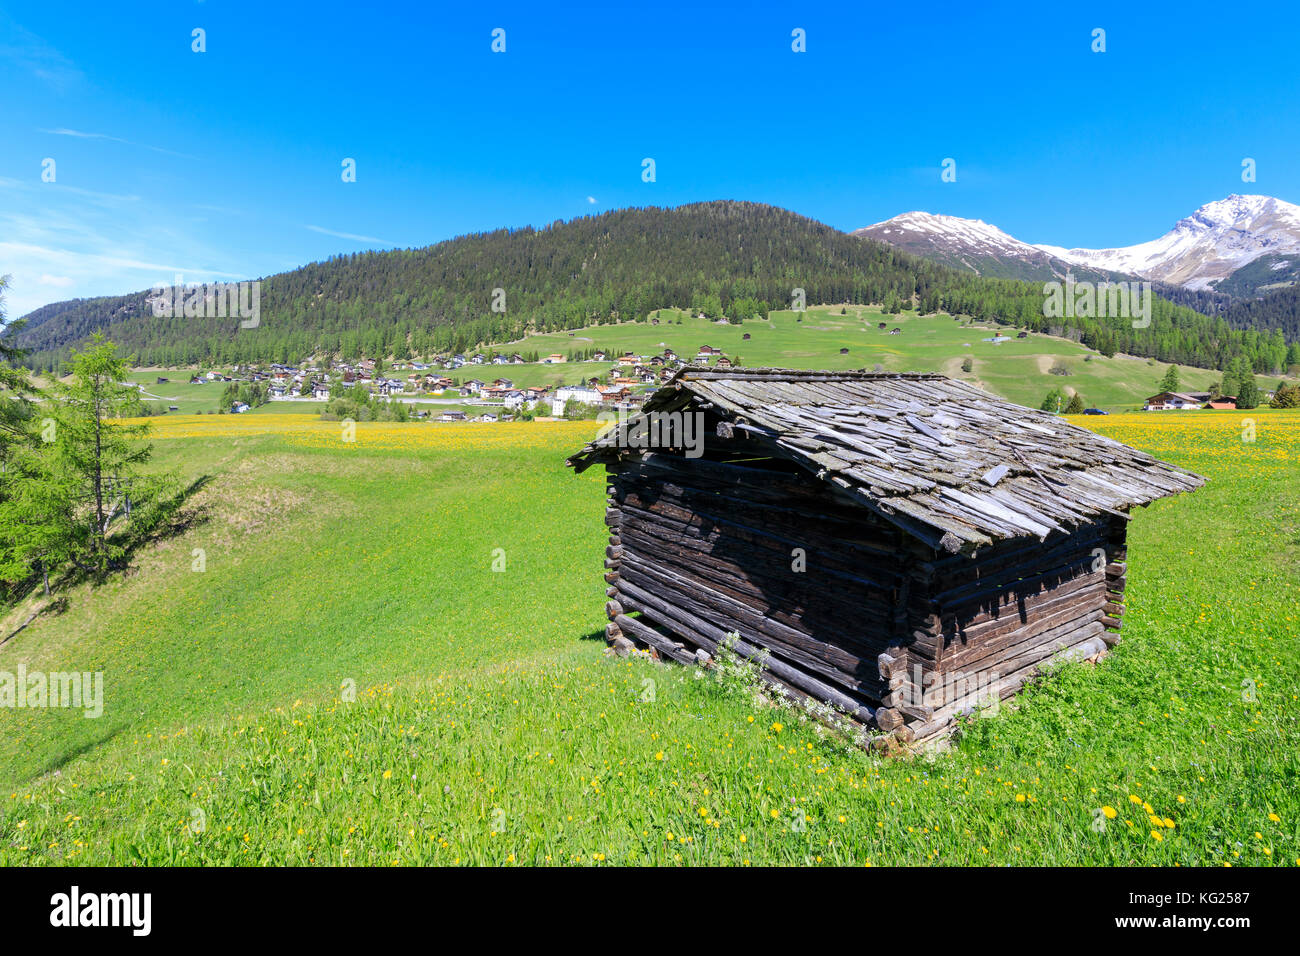 Cabane alpine dans les prairies verdoyantes, Davos Wiesen, canton de Graubunden, région de Prettigovia Davos, Suisse, Europe Banque D'Images